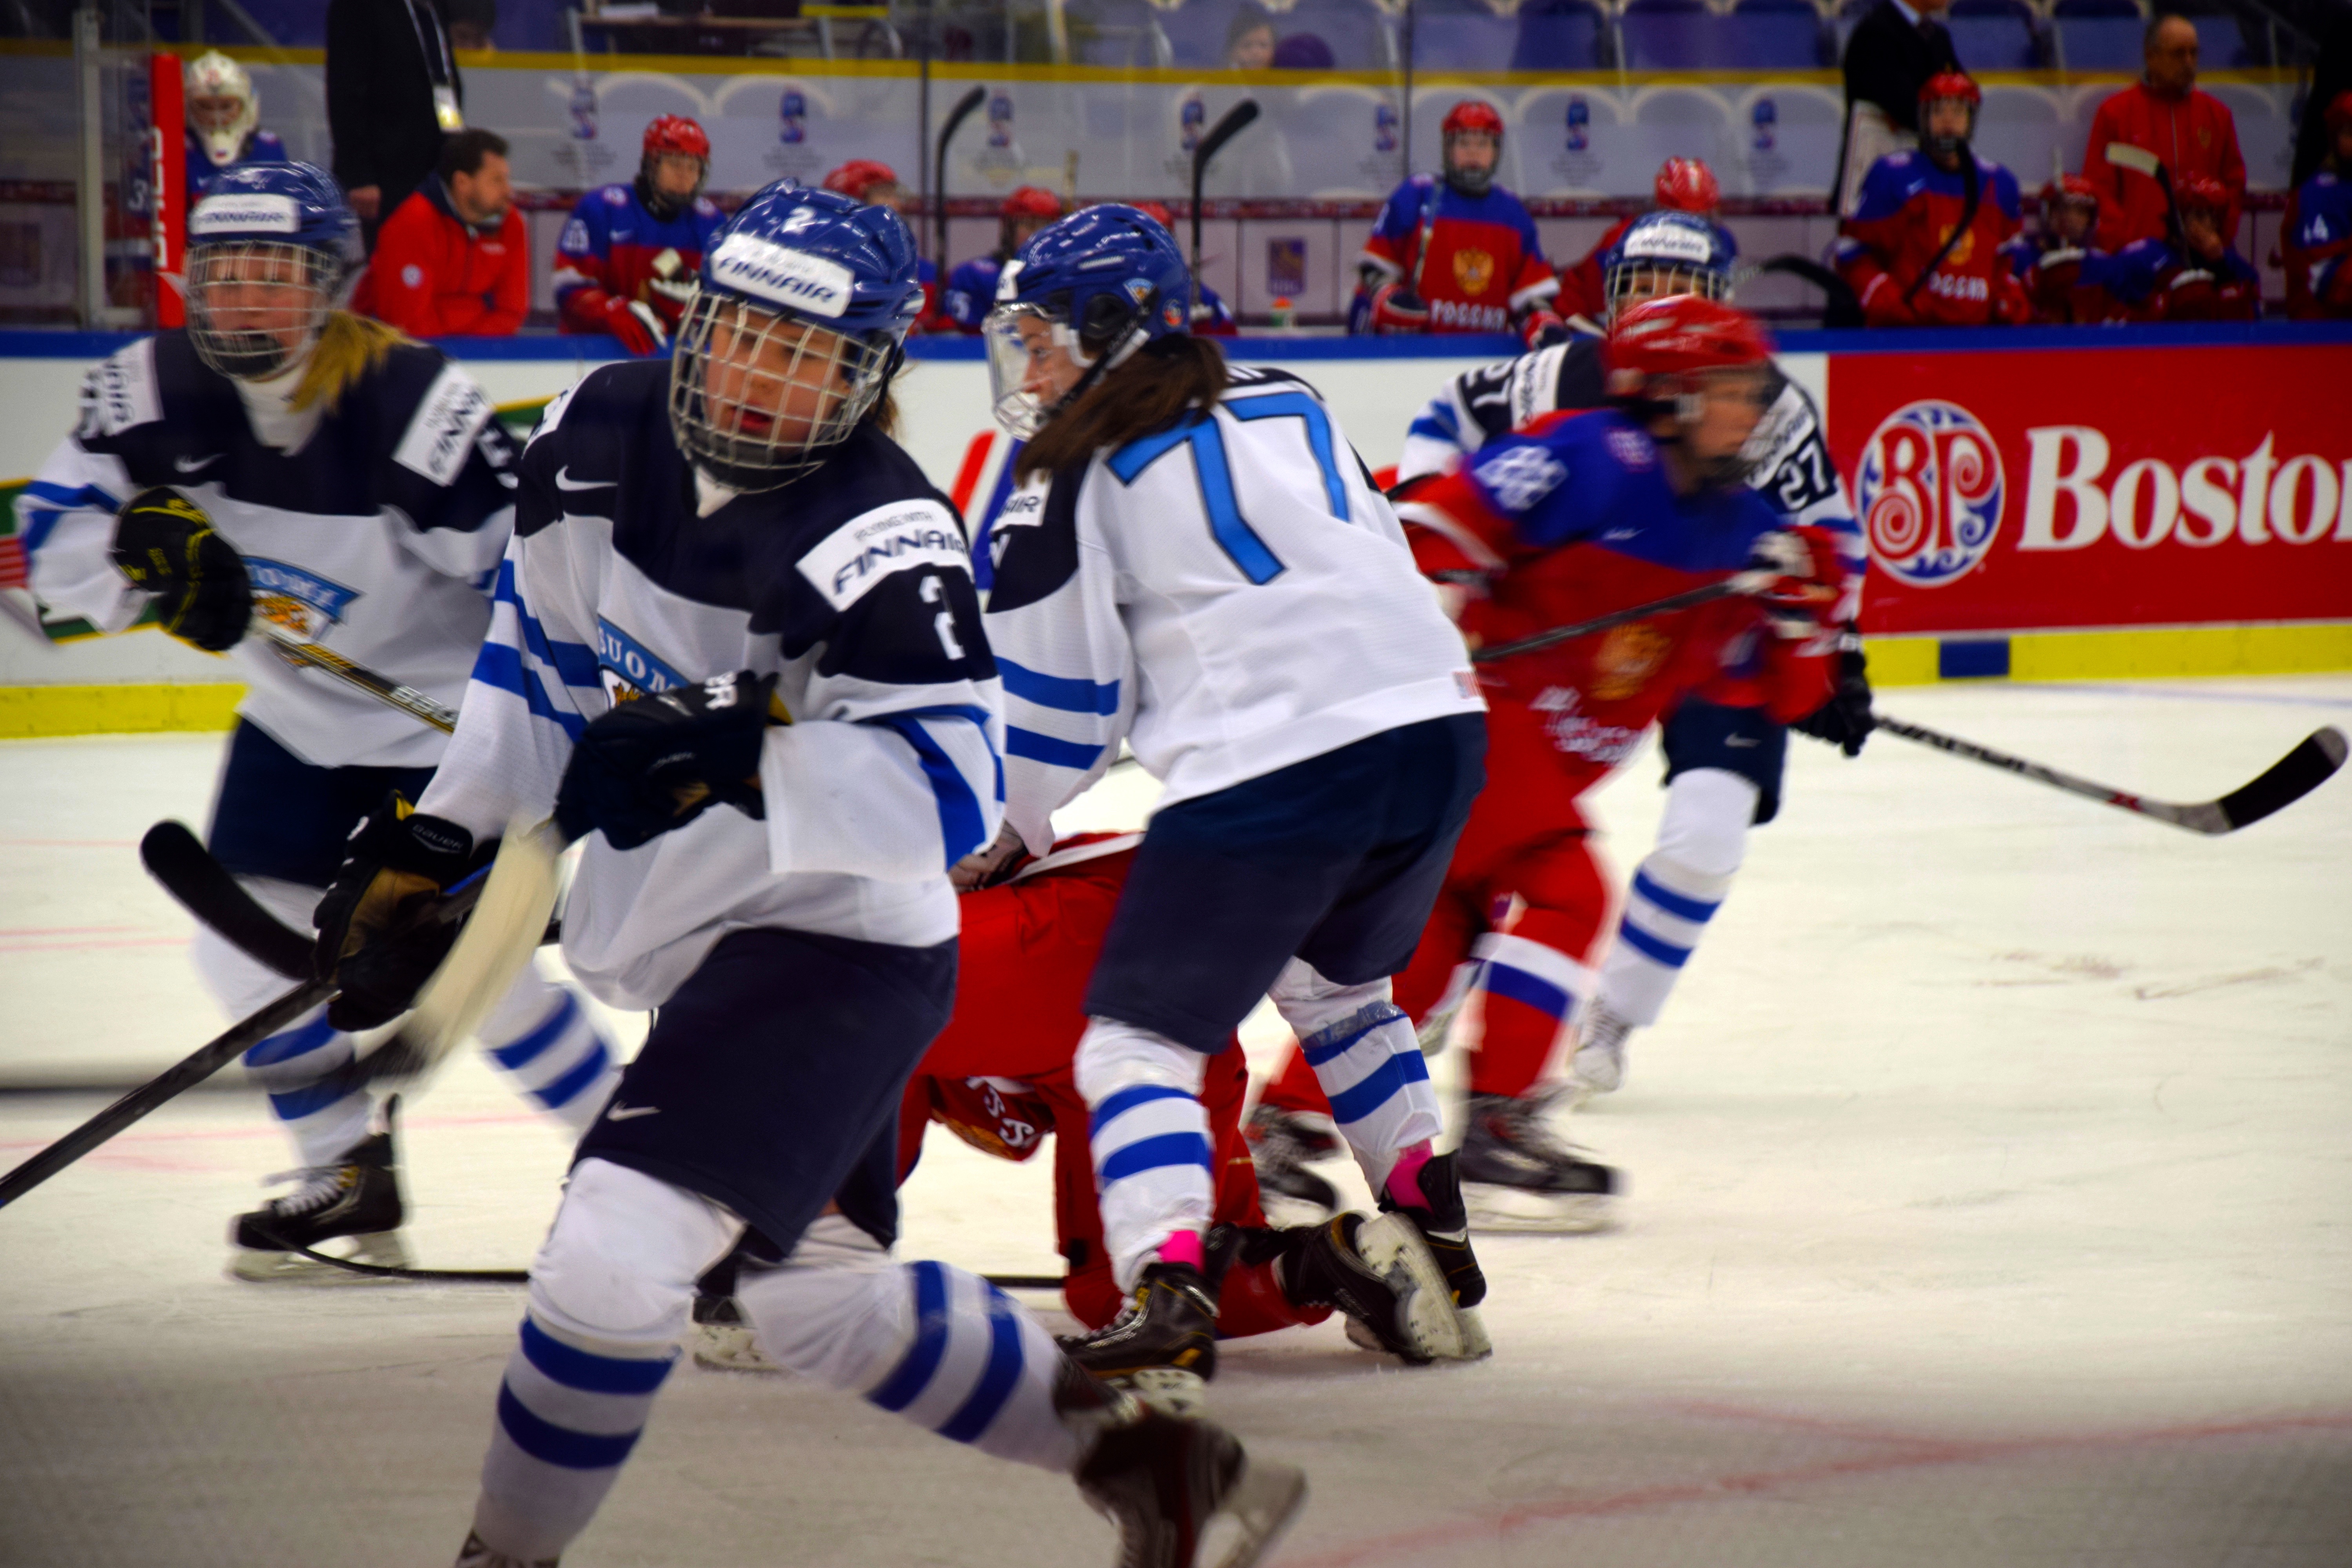 IIHF Member National Association Finland